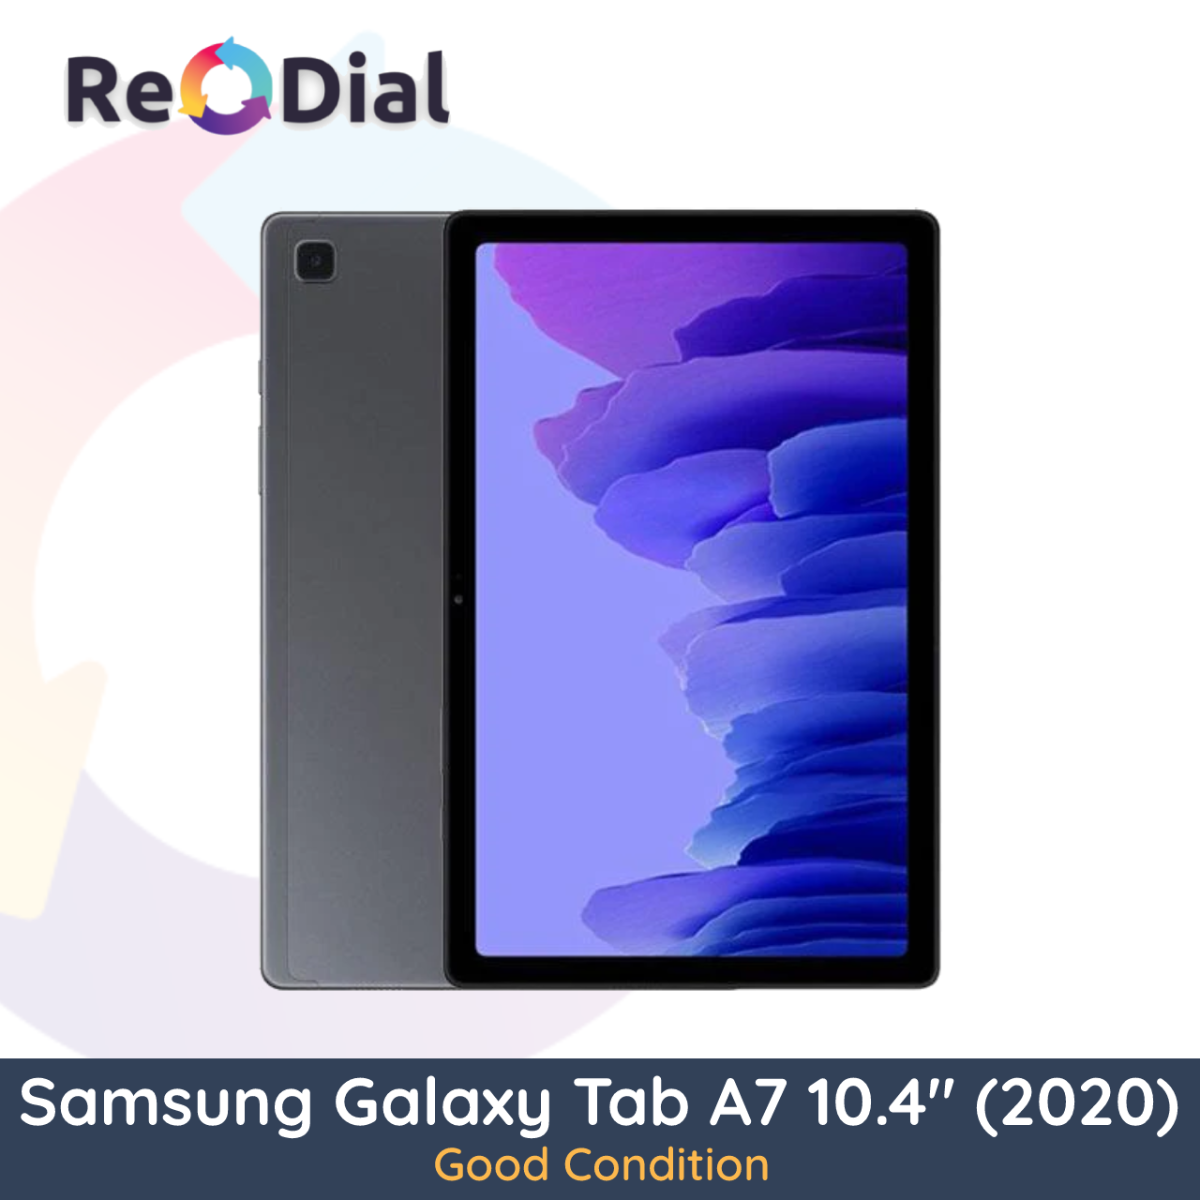 Samsung Galaxy Tab A7 10.4" (T500 / 2020) WiFi + Cellular - Good Condition